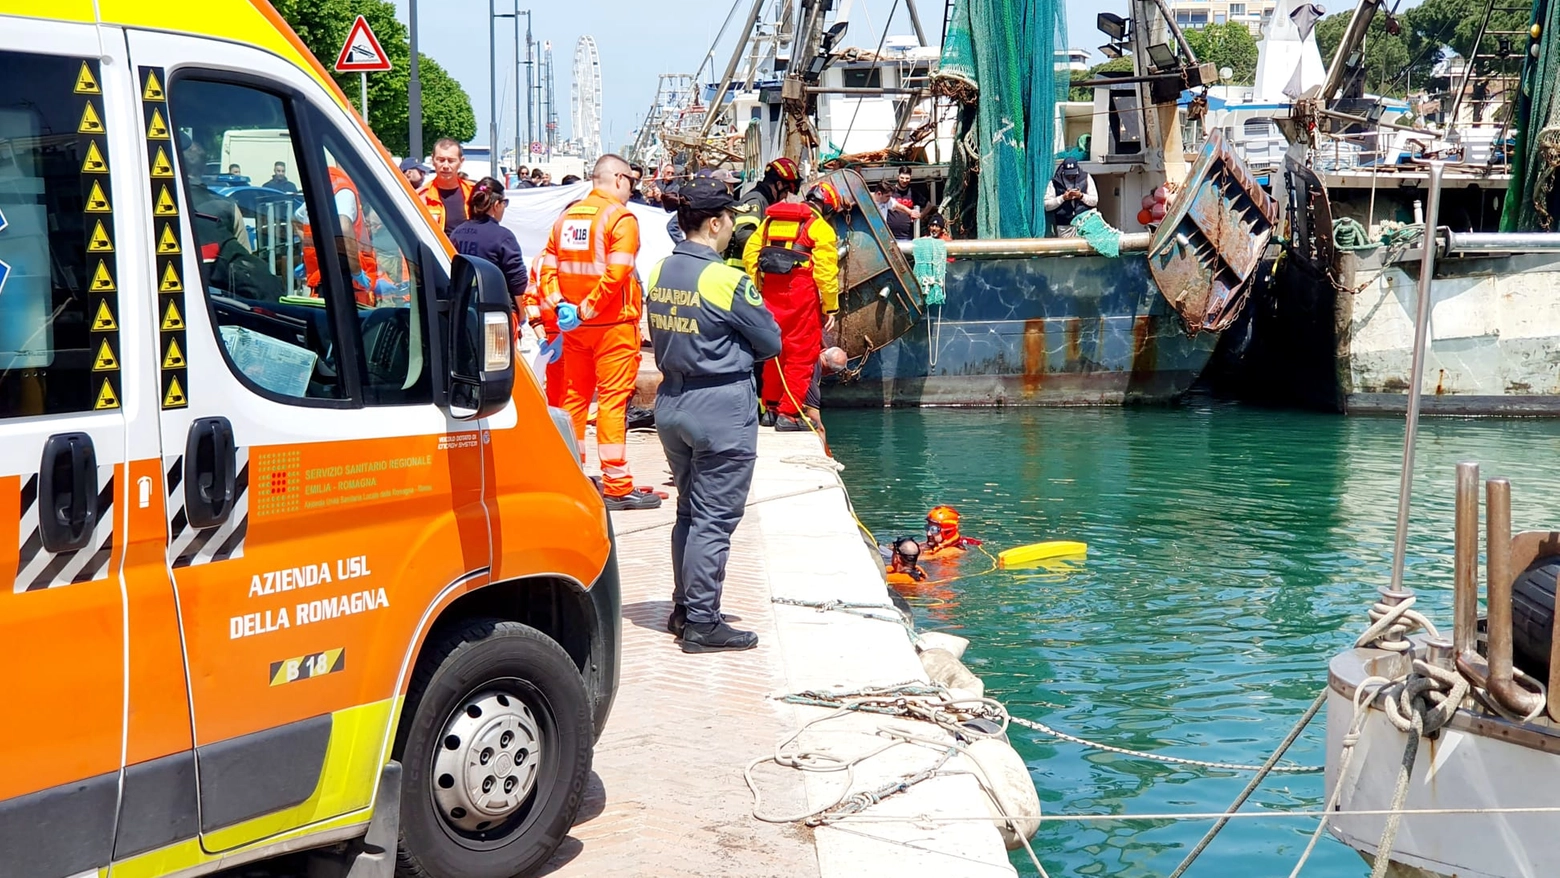 Le operazioni nel porto canale di Rimini (foto Migliorini)